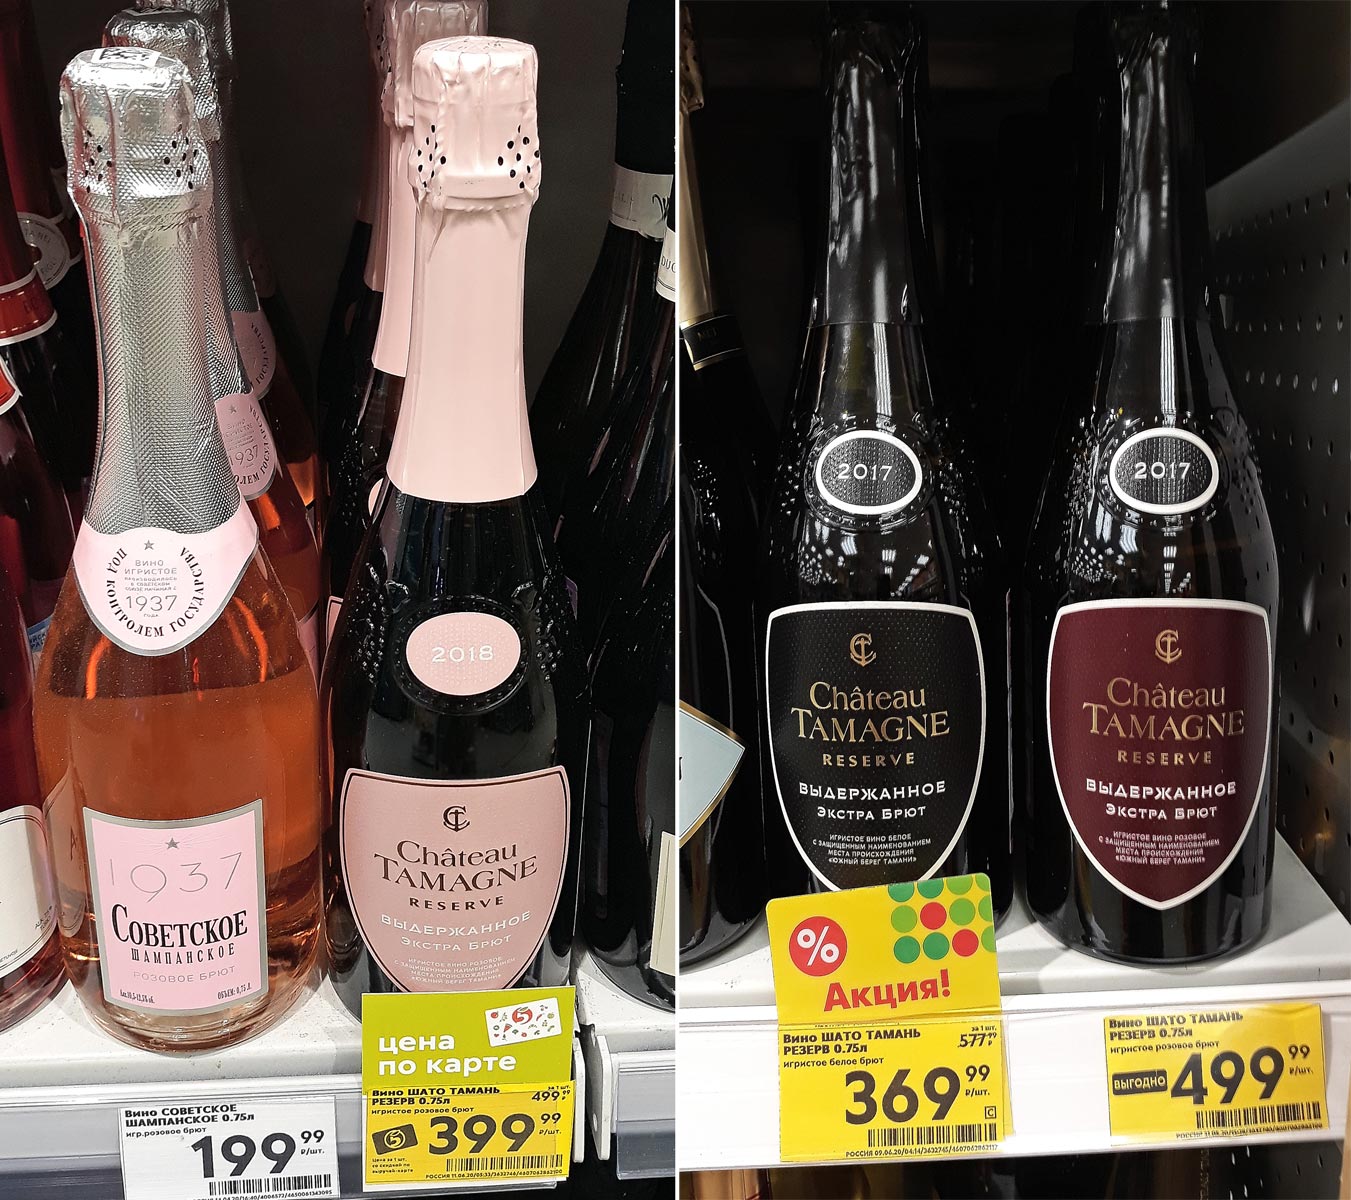 Шампанское купить тула. Шато Тамань шампанское брют. Chateau Tamagne шампанское Шато Тамань. Шато Тамань шампанское брют розовое резерва. Шампанское Тамань брют розовое.